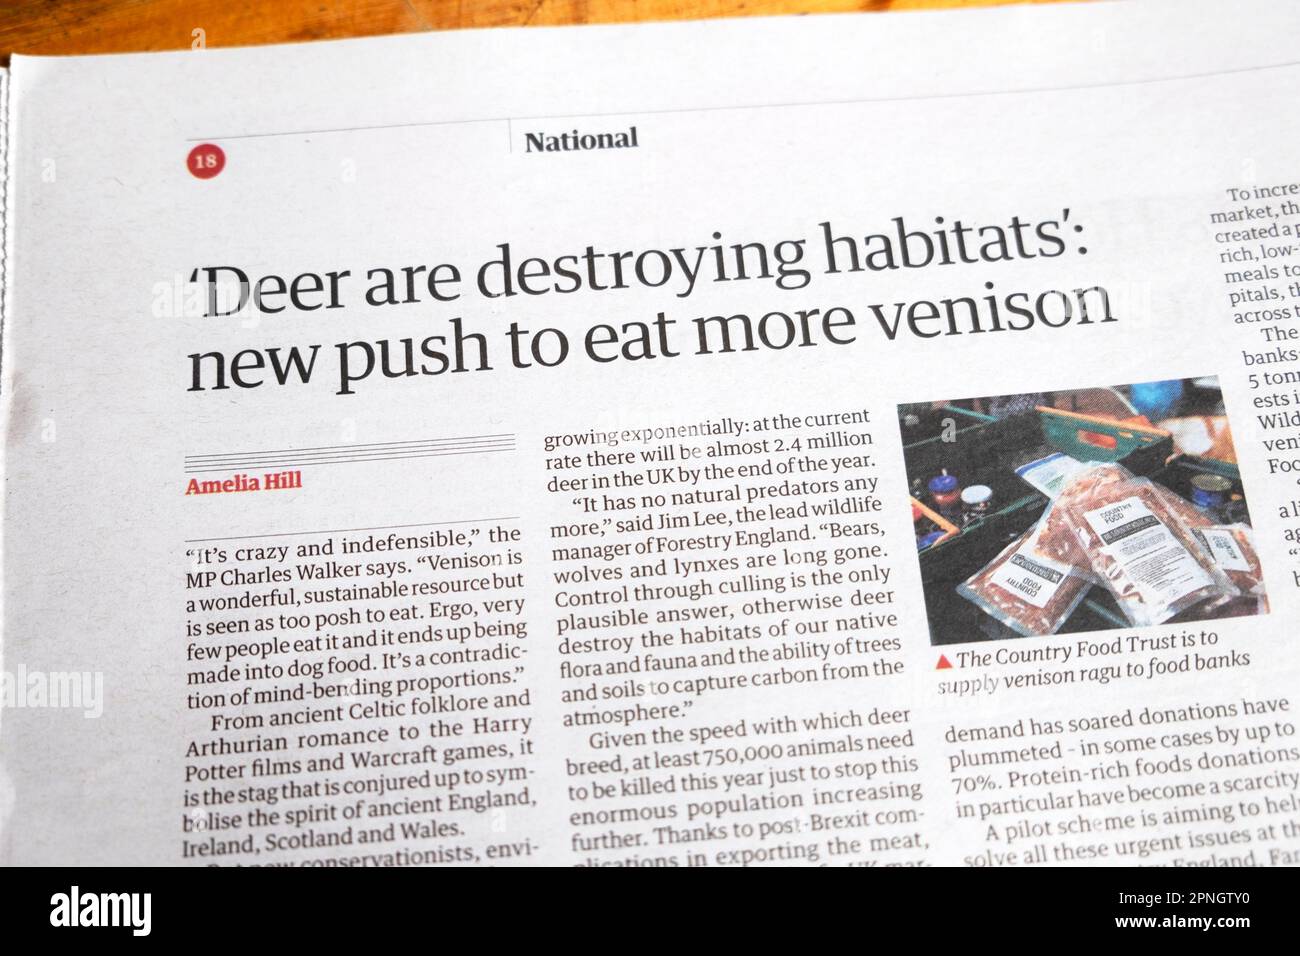 'I cervi stanno distruggendo gli habitat': Nuovo impulso a mangiare più veleno' Guardian giornale titolo 18 marzo 2023 Foto Stock